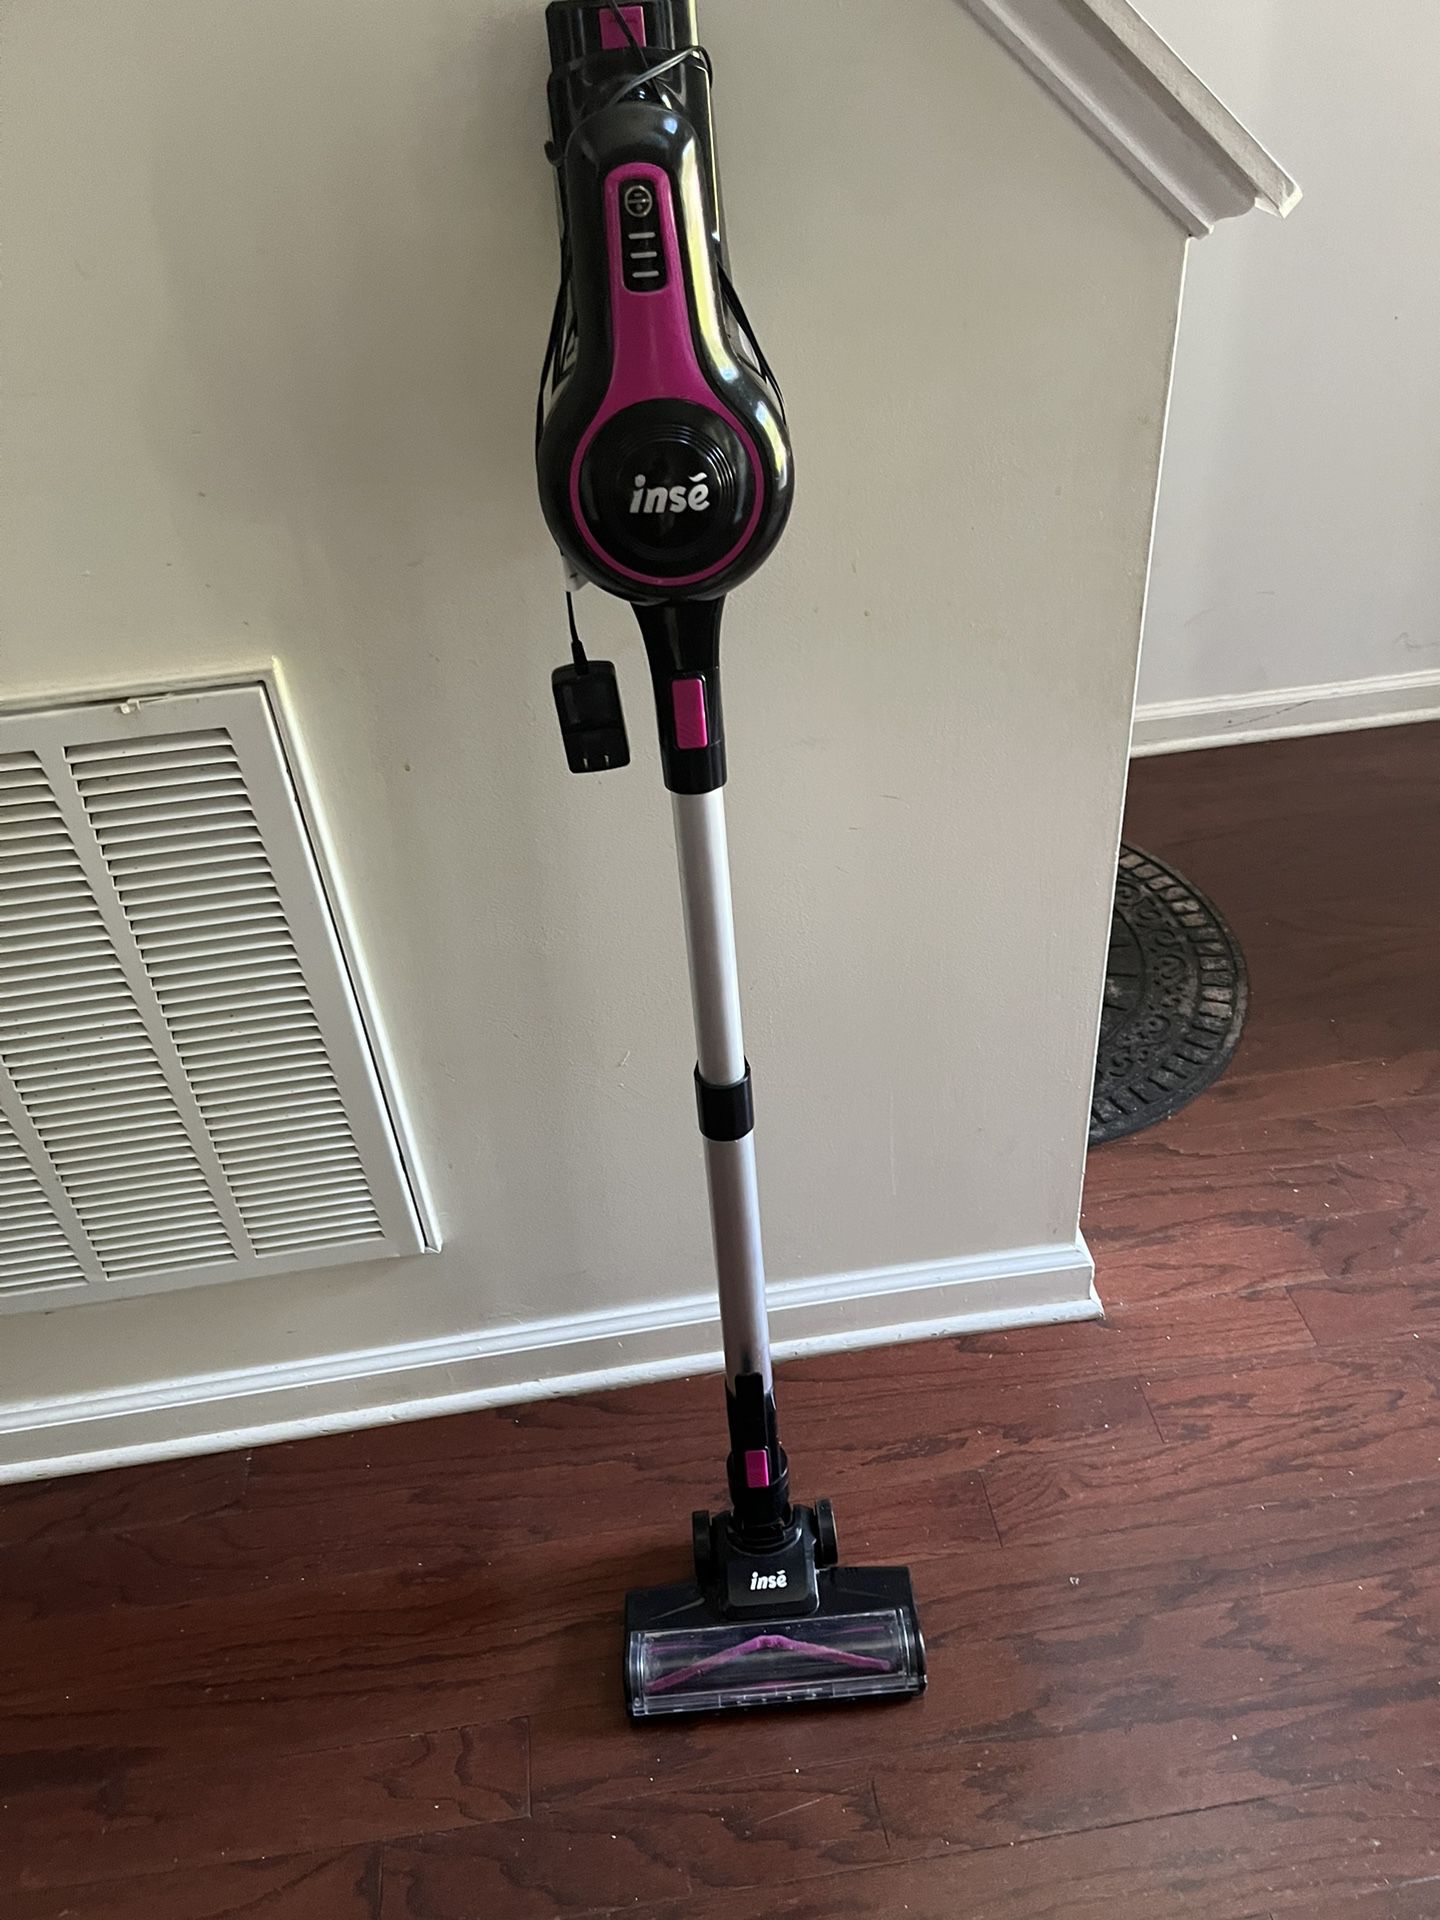 INSE cordless Vacuum Cleaner 